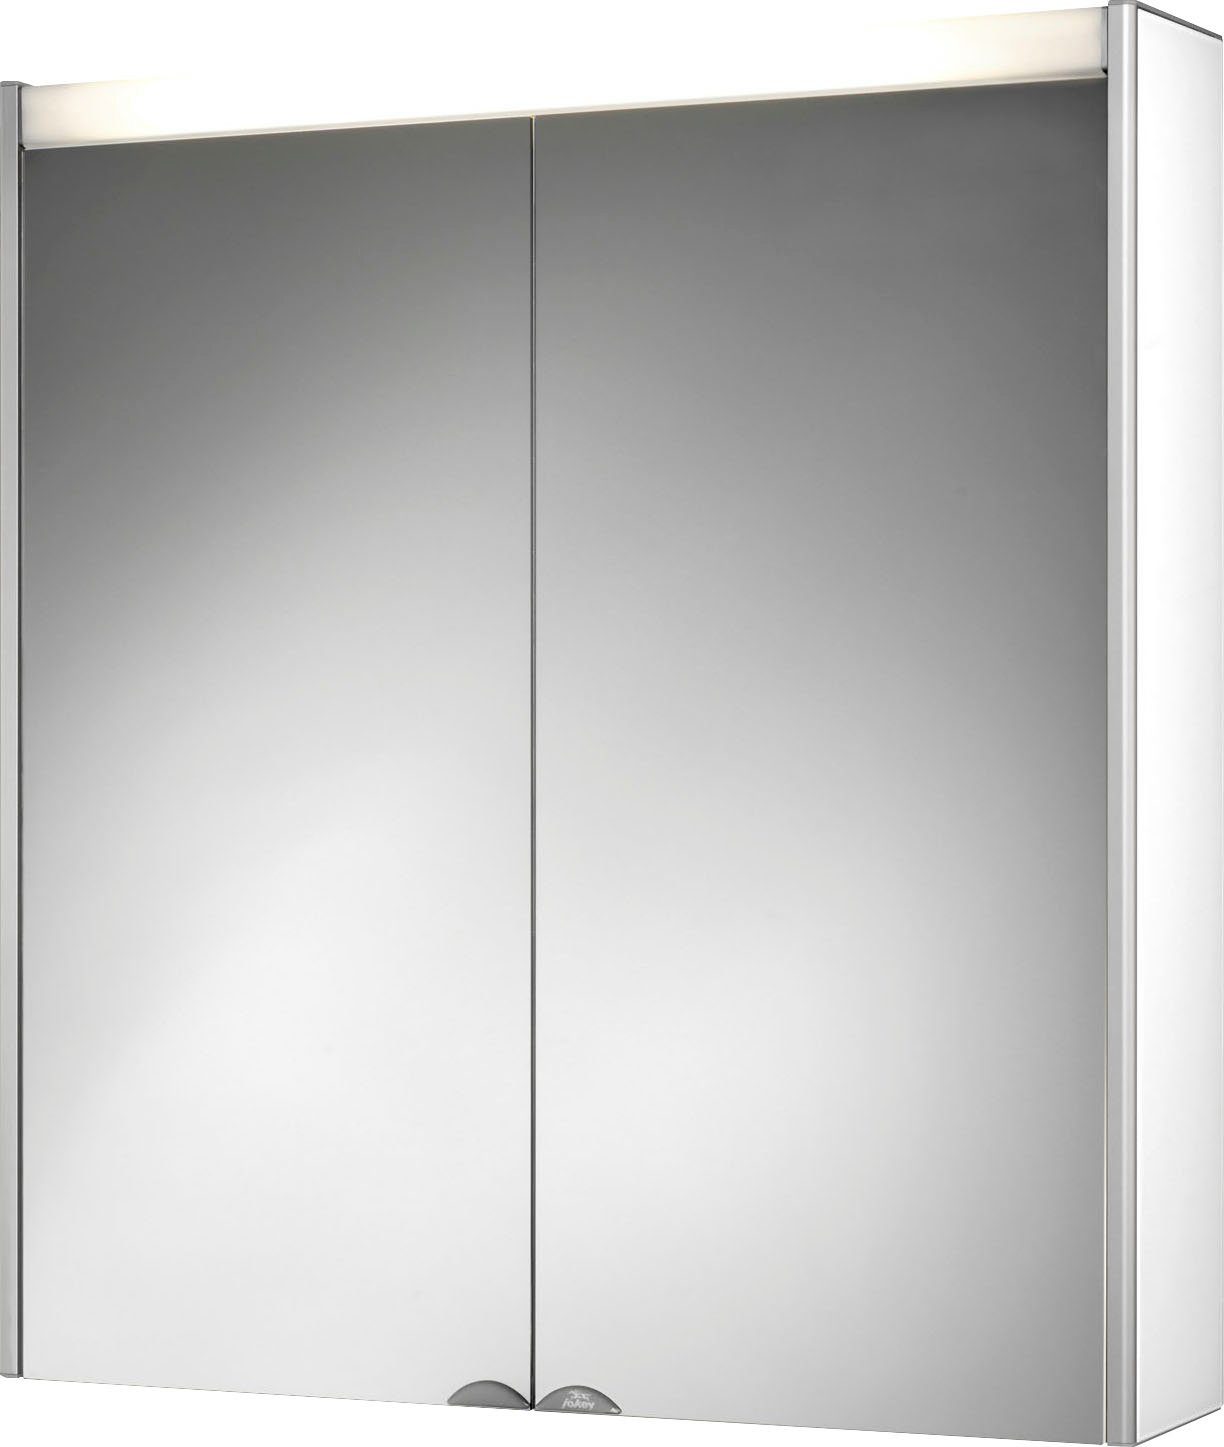 jokey Spiegelschrank Dekor Alu LED Aluminium, 65,4cm breit